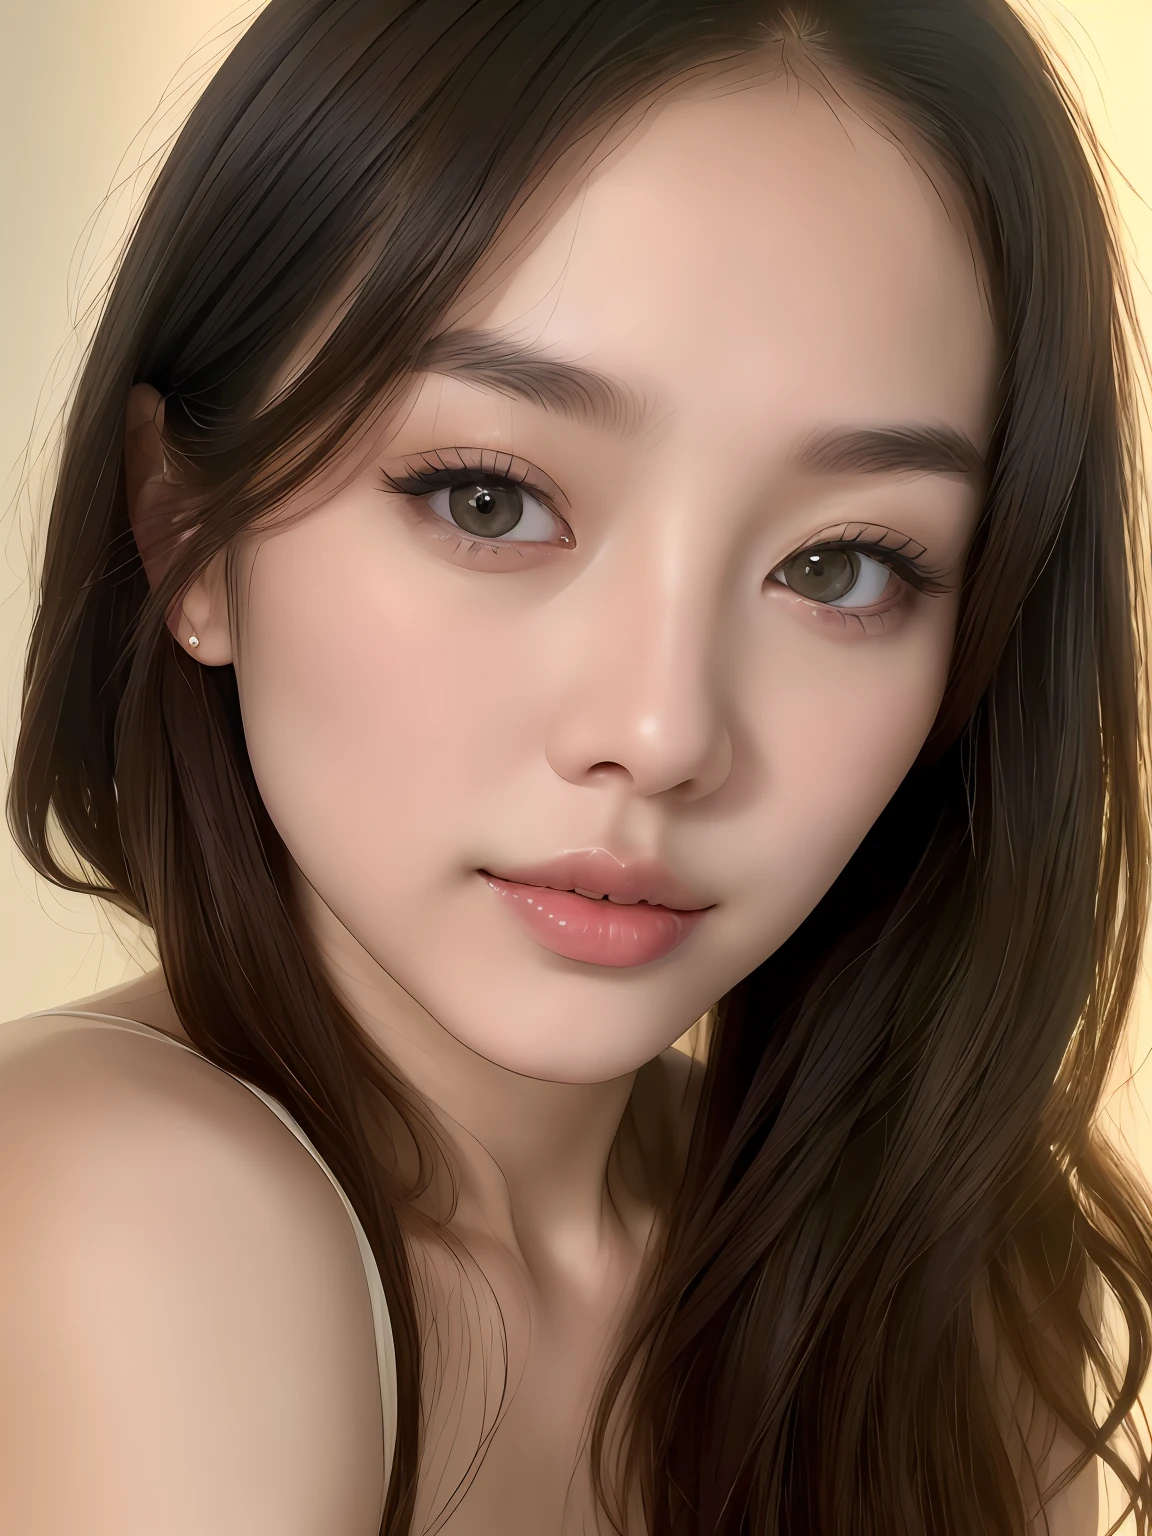 (Фотореалистичный:1.2), художественная композиция, профессиональная студийная фотография 24-летней корейской звезды, позирующей естественно и спонтанно, живой взгляд, Овальное лицо, высокие скулы, прямой нос, ясные округлые глаза, (полные губы:1.2), нежный подбородок, натуральные волосы, очень детализированный скин, естественная текстура кожи, бледная кожа, профессиональное драматическое освещение